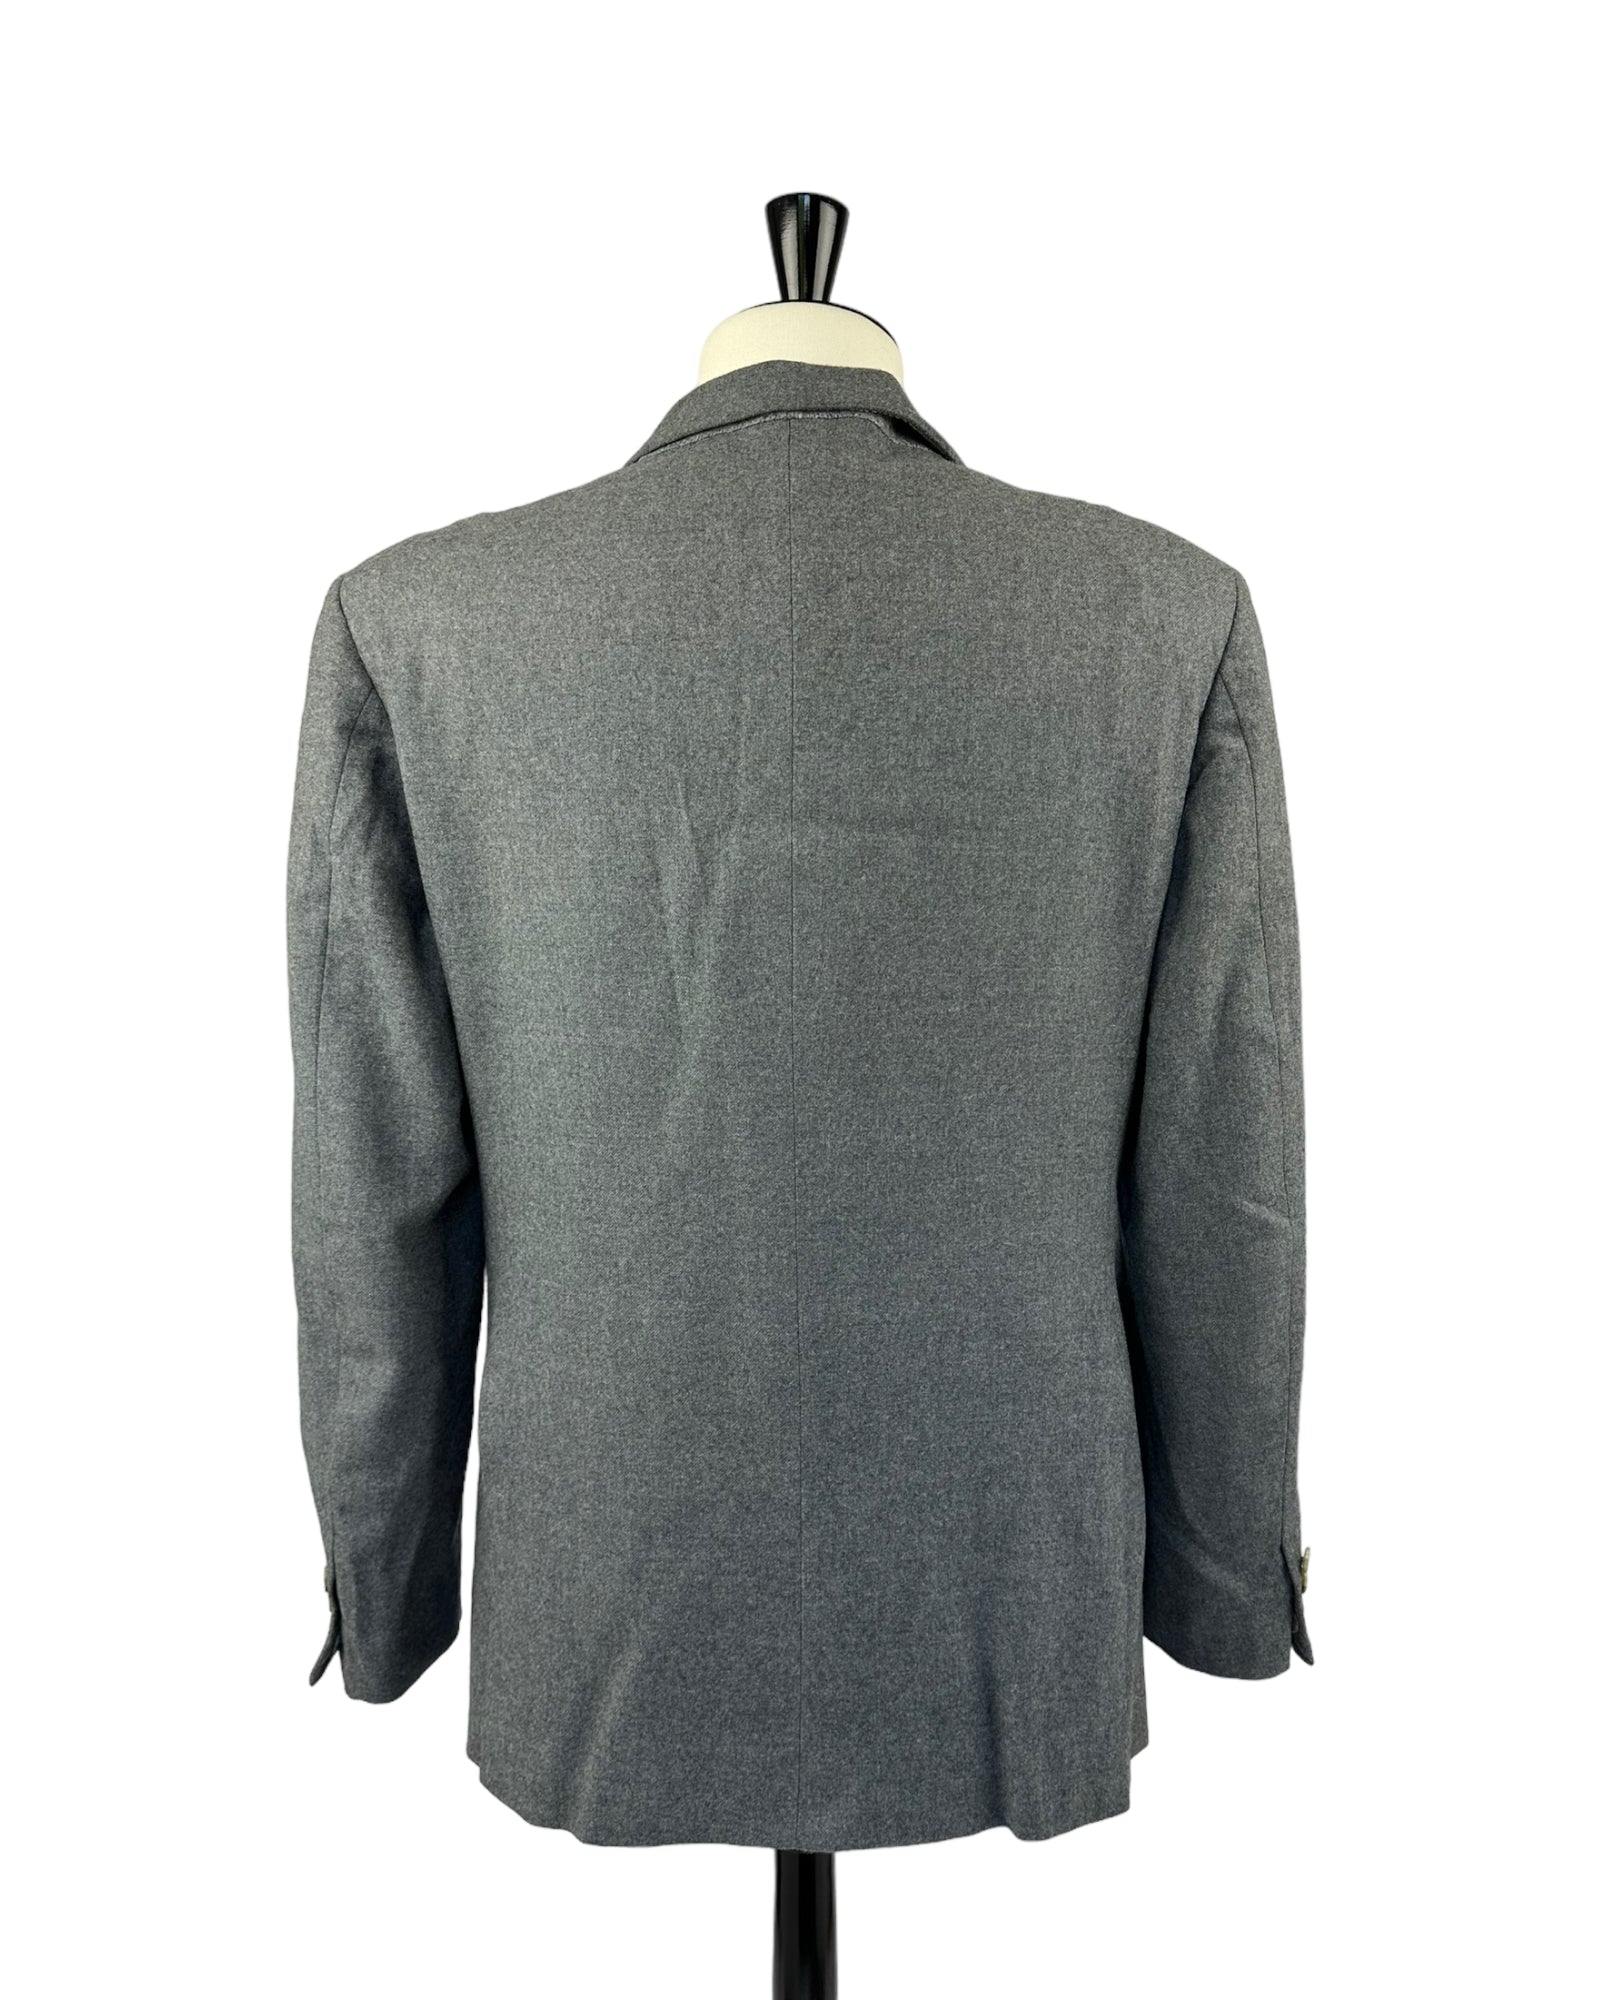 Edward Sexton Vintage flanellen jasje met dubbele rij knopen